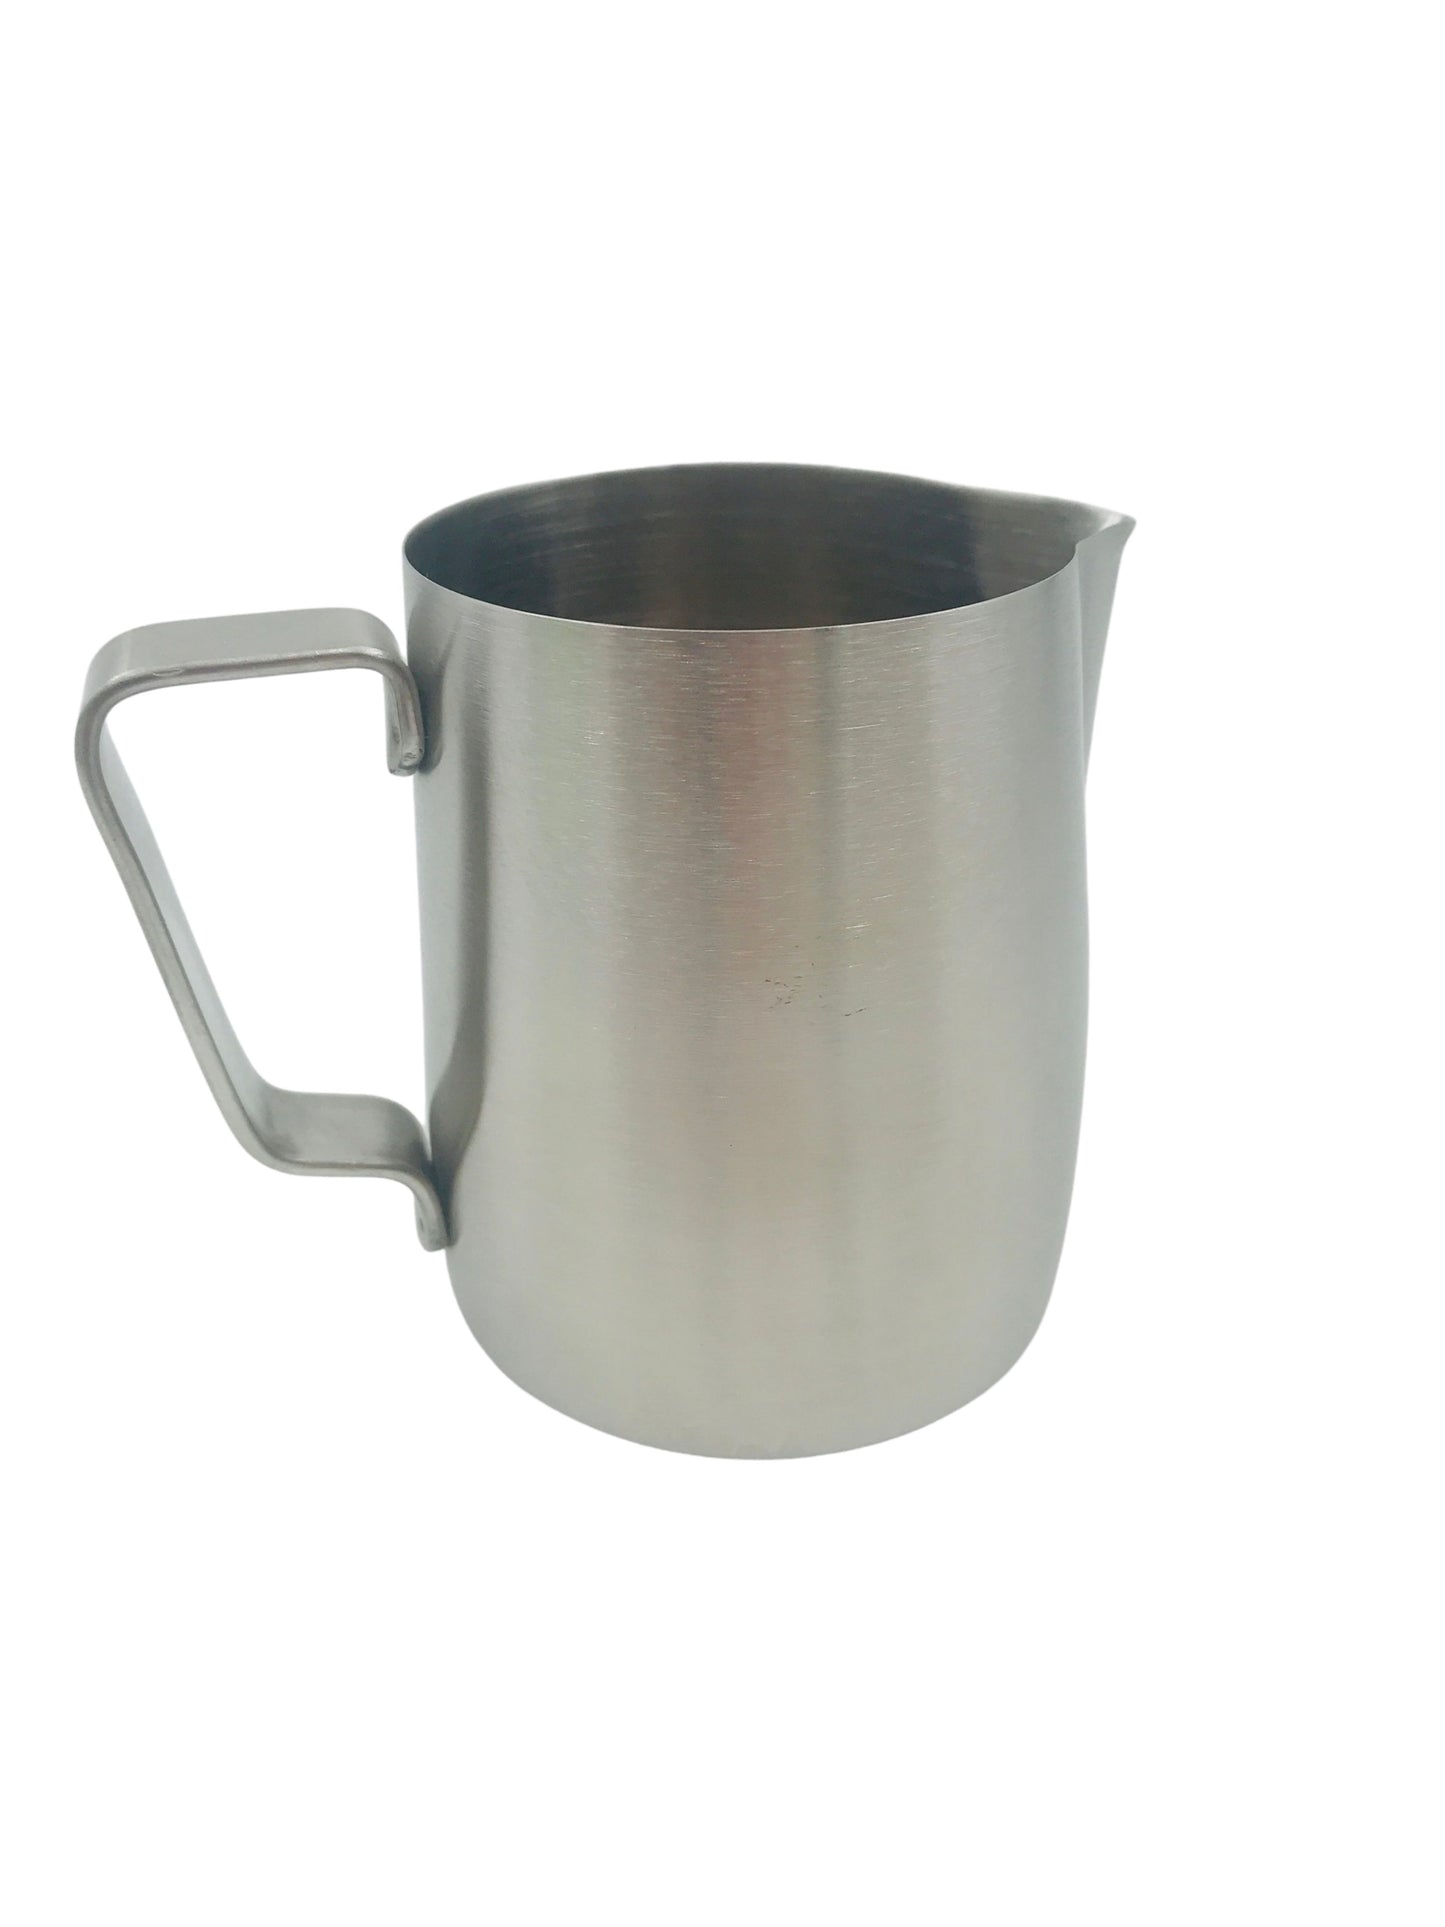 Milk Jug - Coffee Accessories 1000ml Stainless Steel Jug